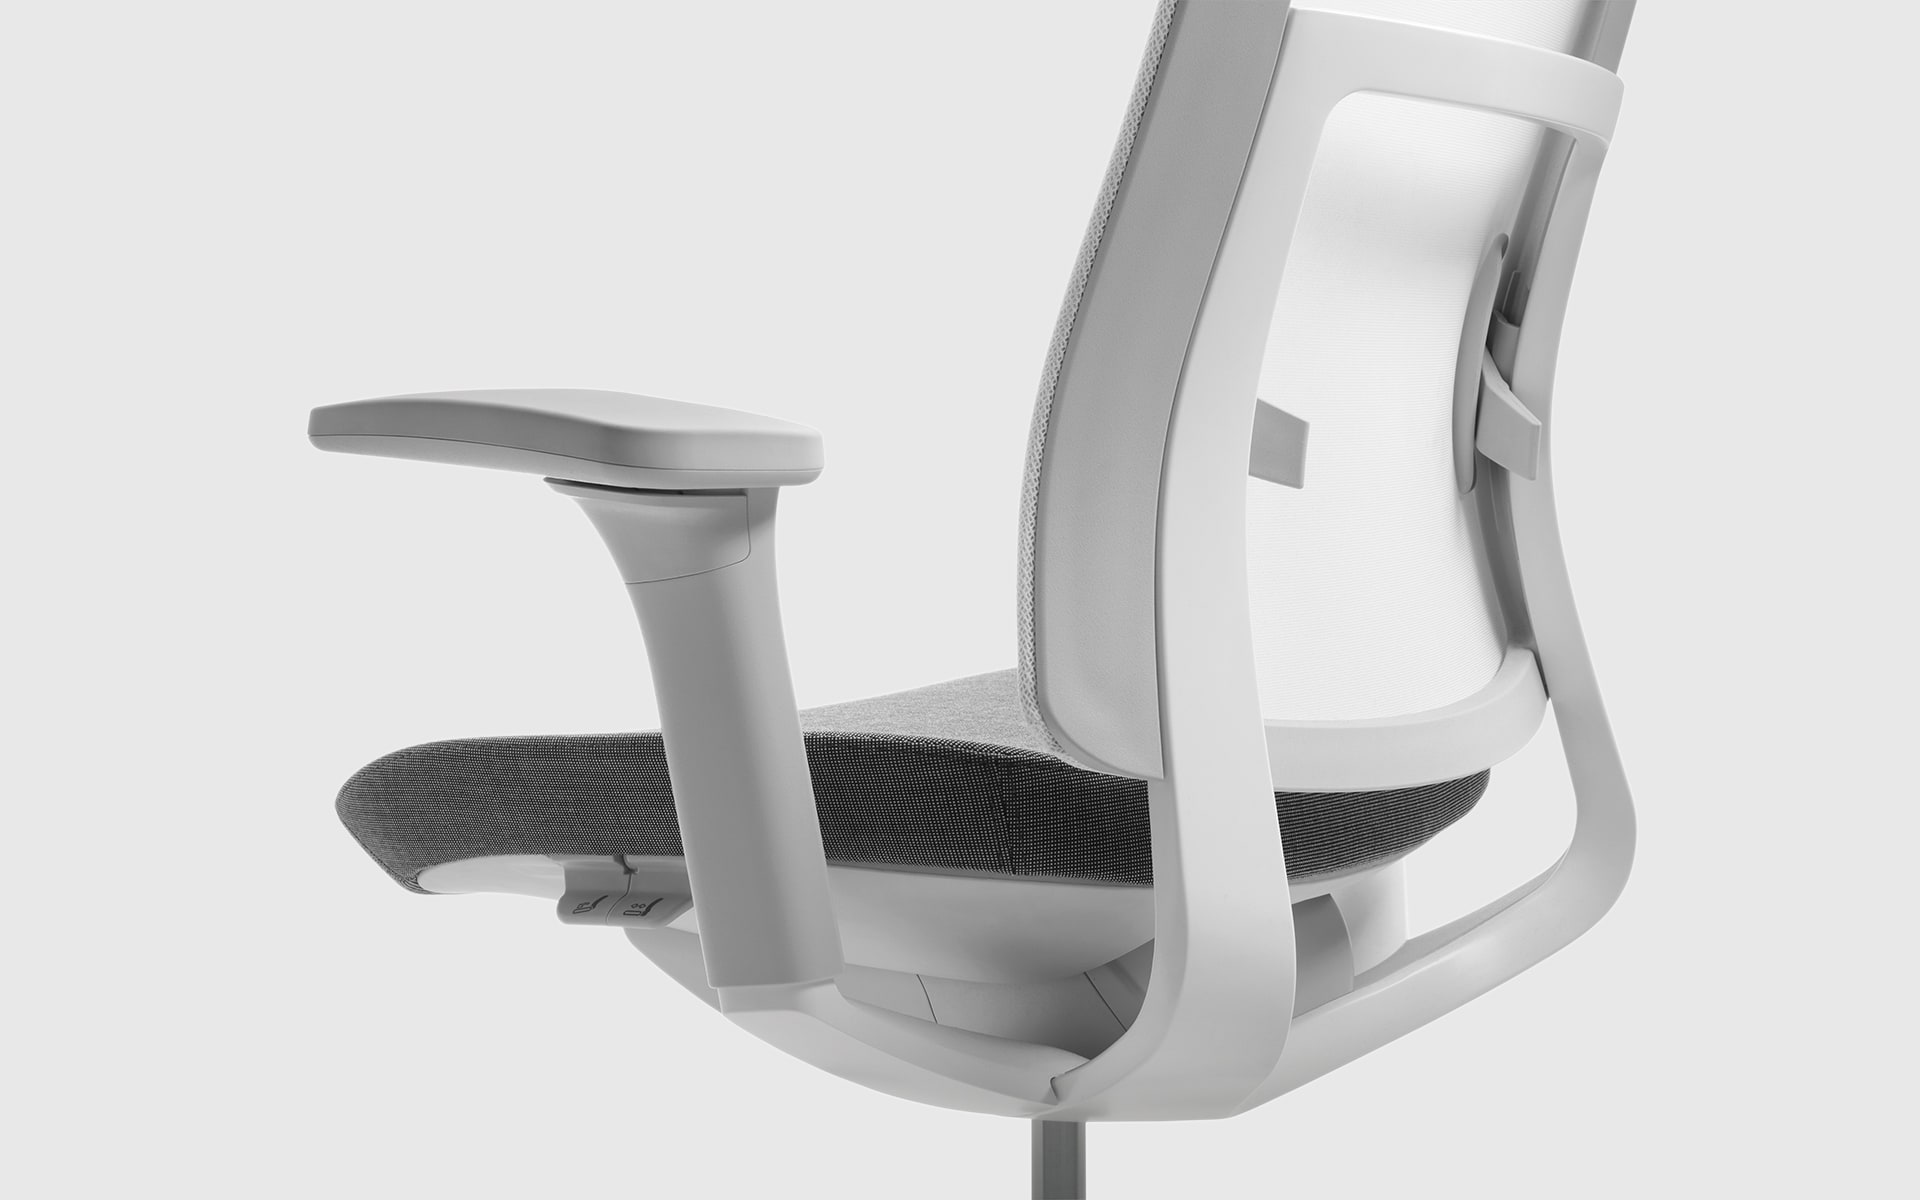 Nahaufnahme des Profim Violle Bürostuhls von ITO Design in Weiß und Grau